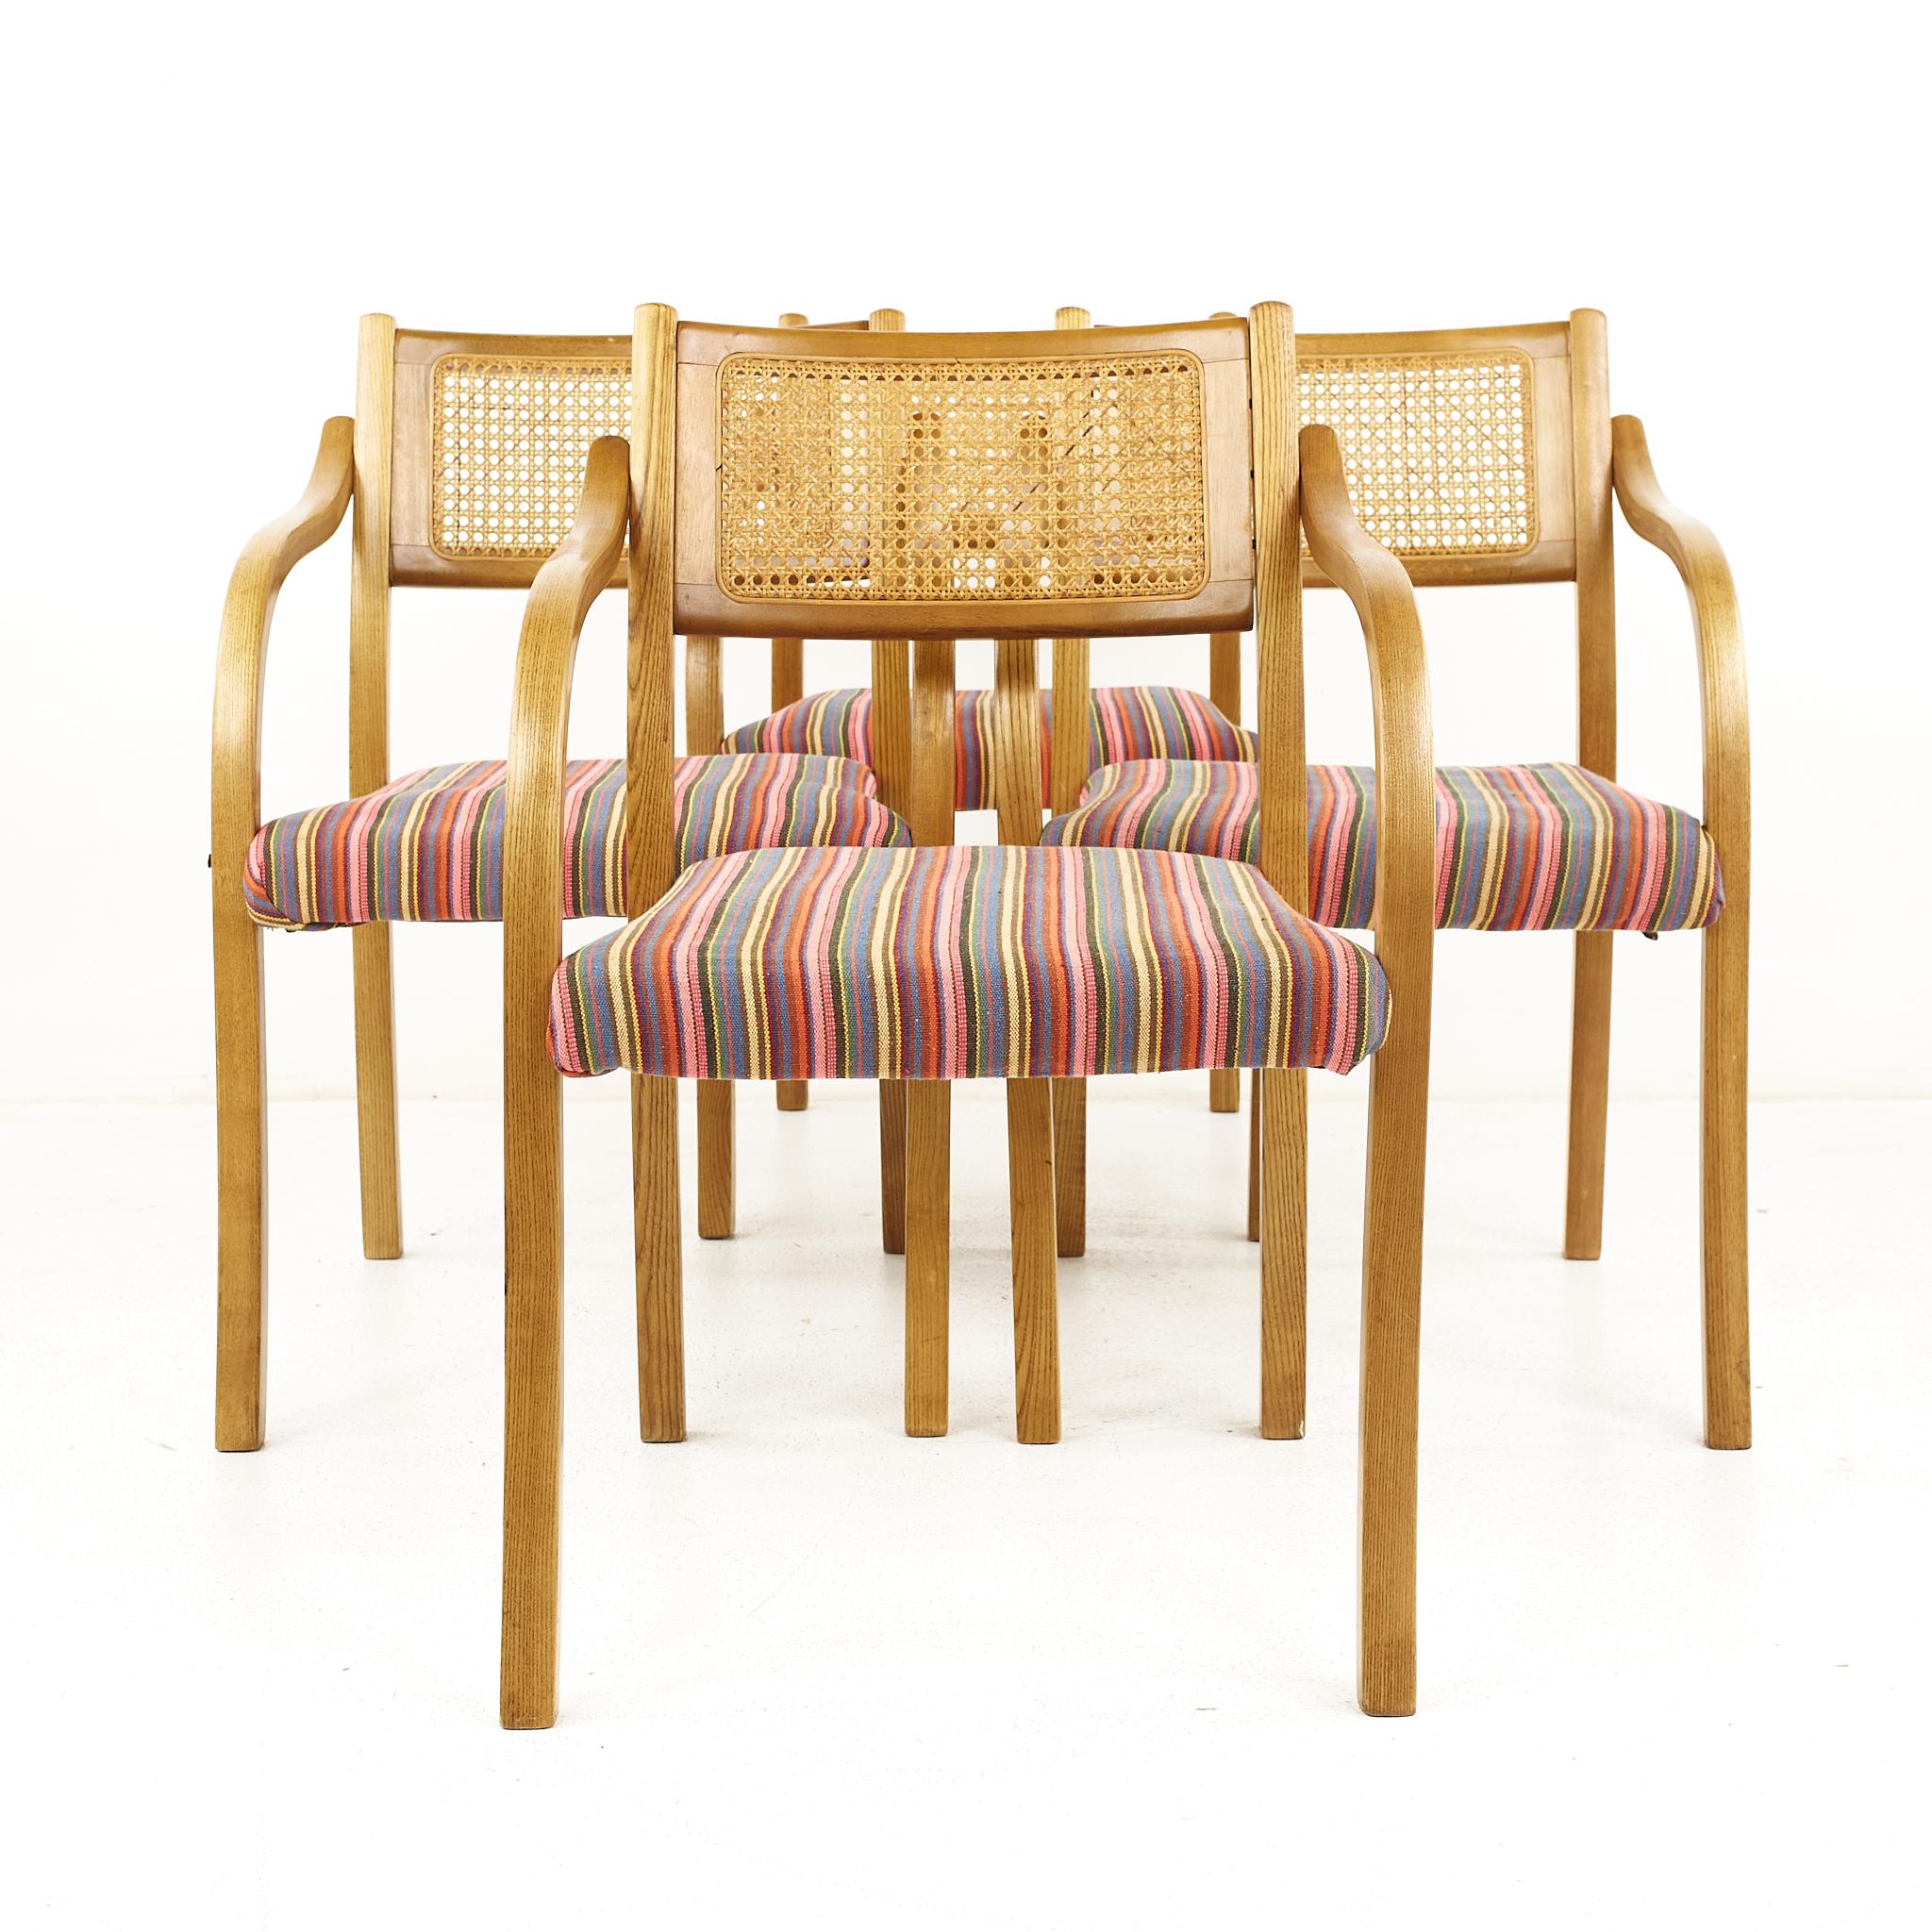 Fauteuils en rotin et bois courbé de style Thonet du milieu du siècle dernier - Lot de 4 

Chaque chaise mesure : (L) 57,38 x (P) 47,38 x (H) 81,28 cm, avec une hauteur d'assise de 43,18 cm et une hauteur d'accoudoir de 66,04 cm 

Toutes les